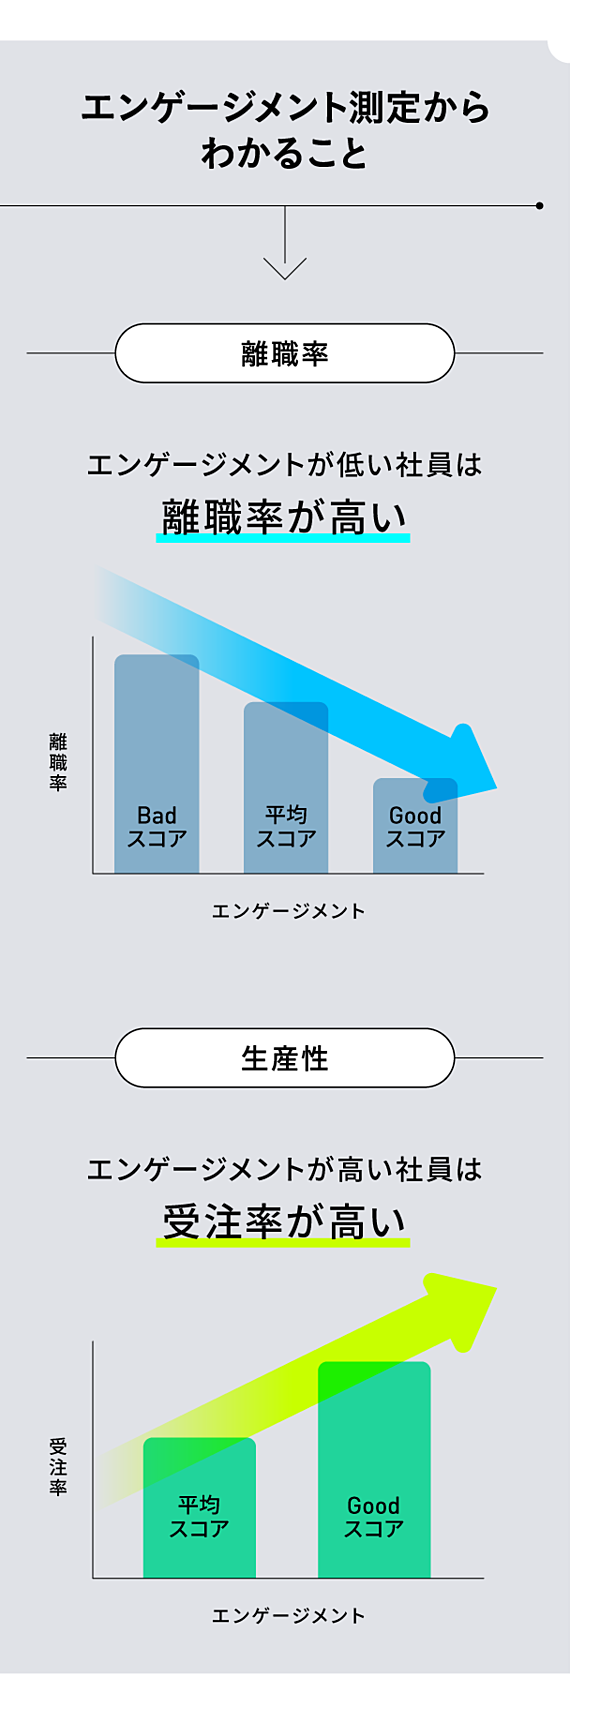 渋澤健 企業のサステナビリティは財務諸表だけで測れない